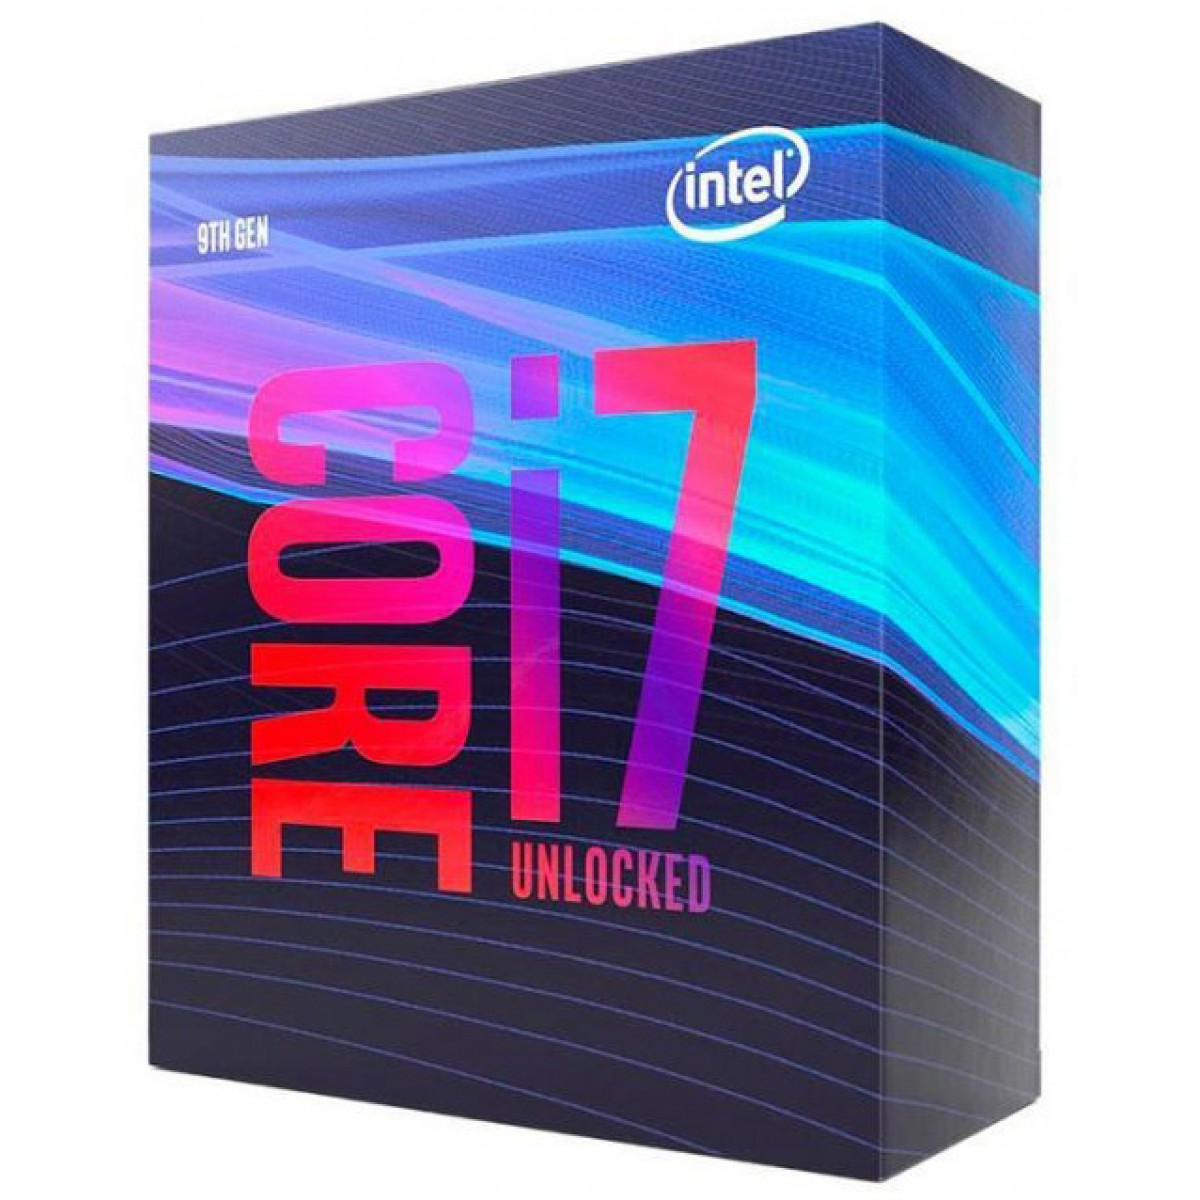 Processador Intel Core i7 9700 3.0GHz (4.70GHz Turbo), 9ª Geração, 8-Core 8-Thread, LGA 1151, BX80684I79700